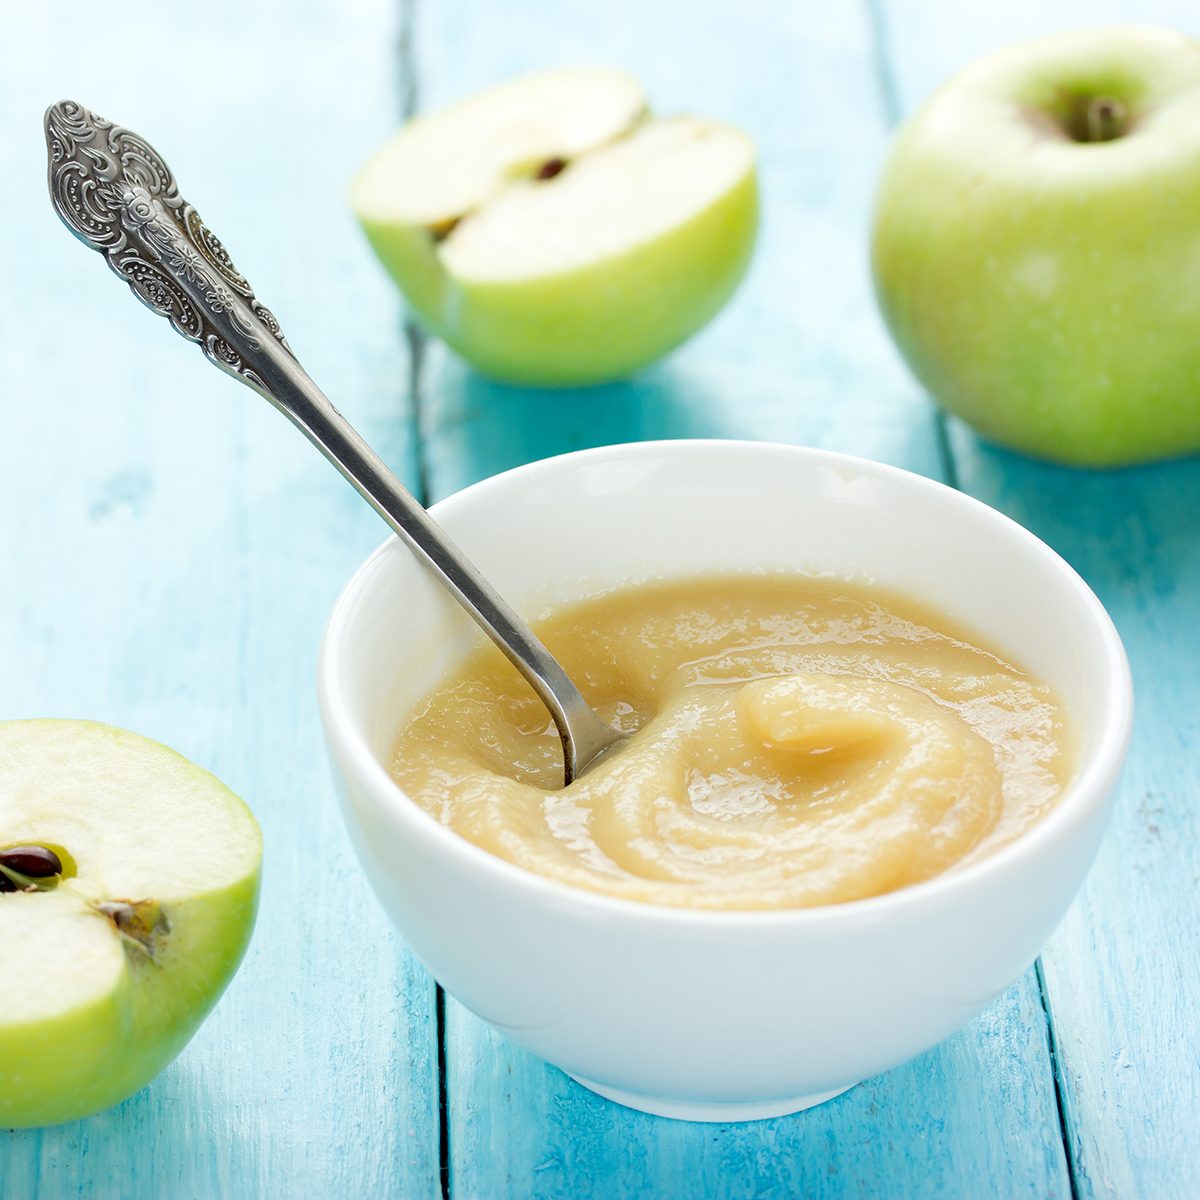 健康的有机苹果酱(苹果泥、慕斯、婴儿食品、酱)在白色碗在桌子上绿色的苹果